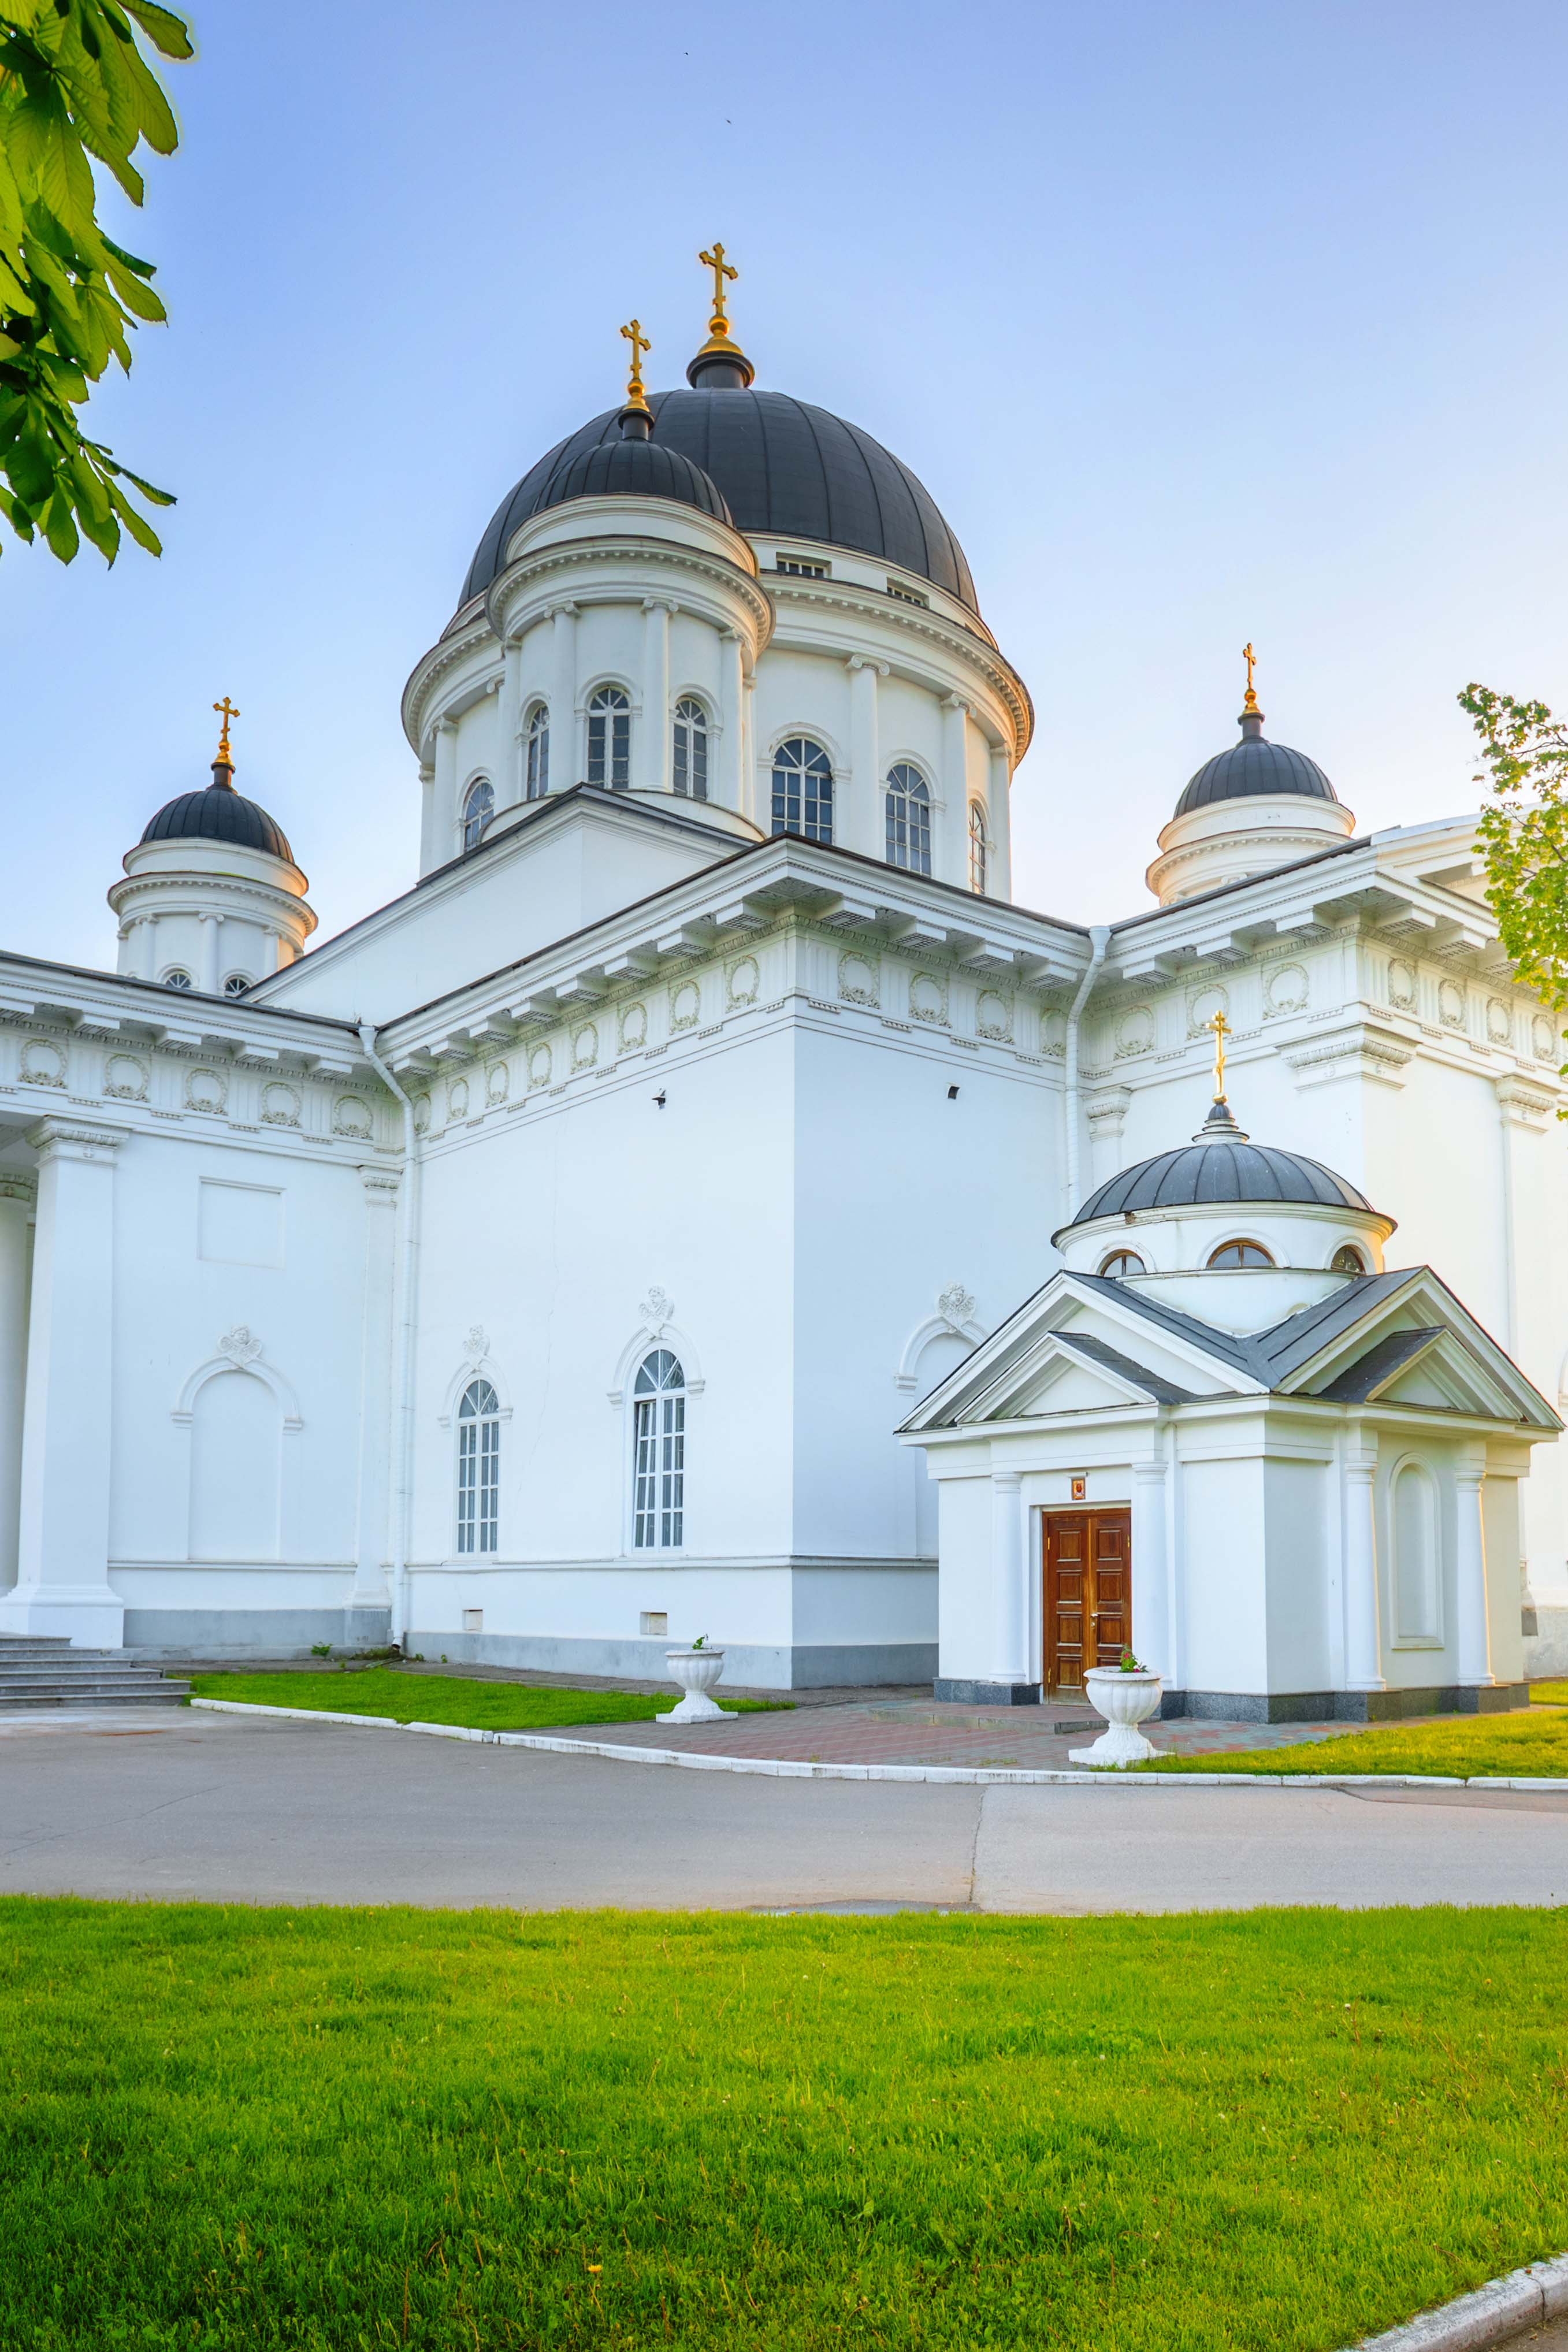 Спасский староярмарочный собор – старая ярмарочная церковь